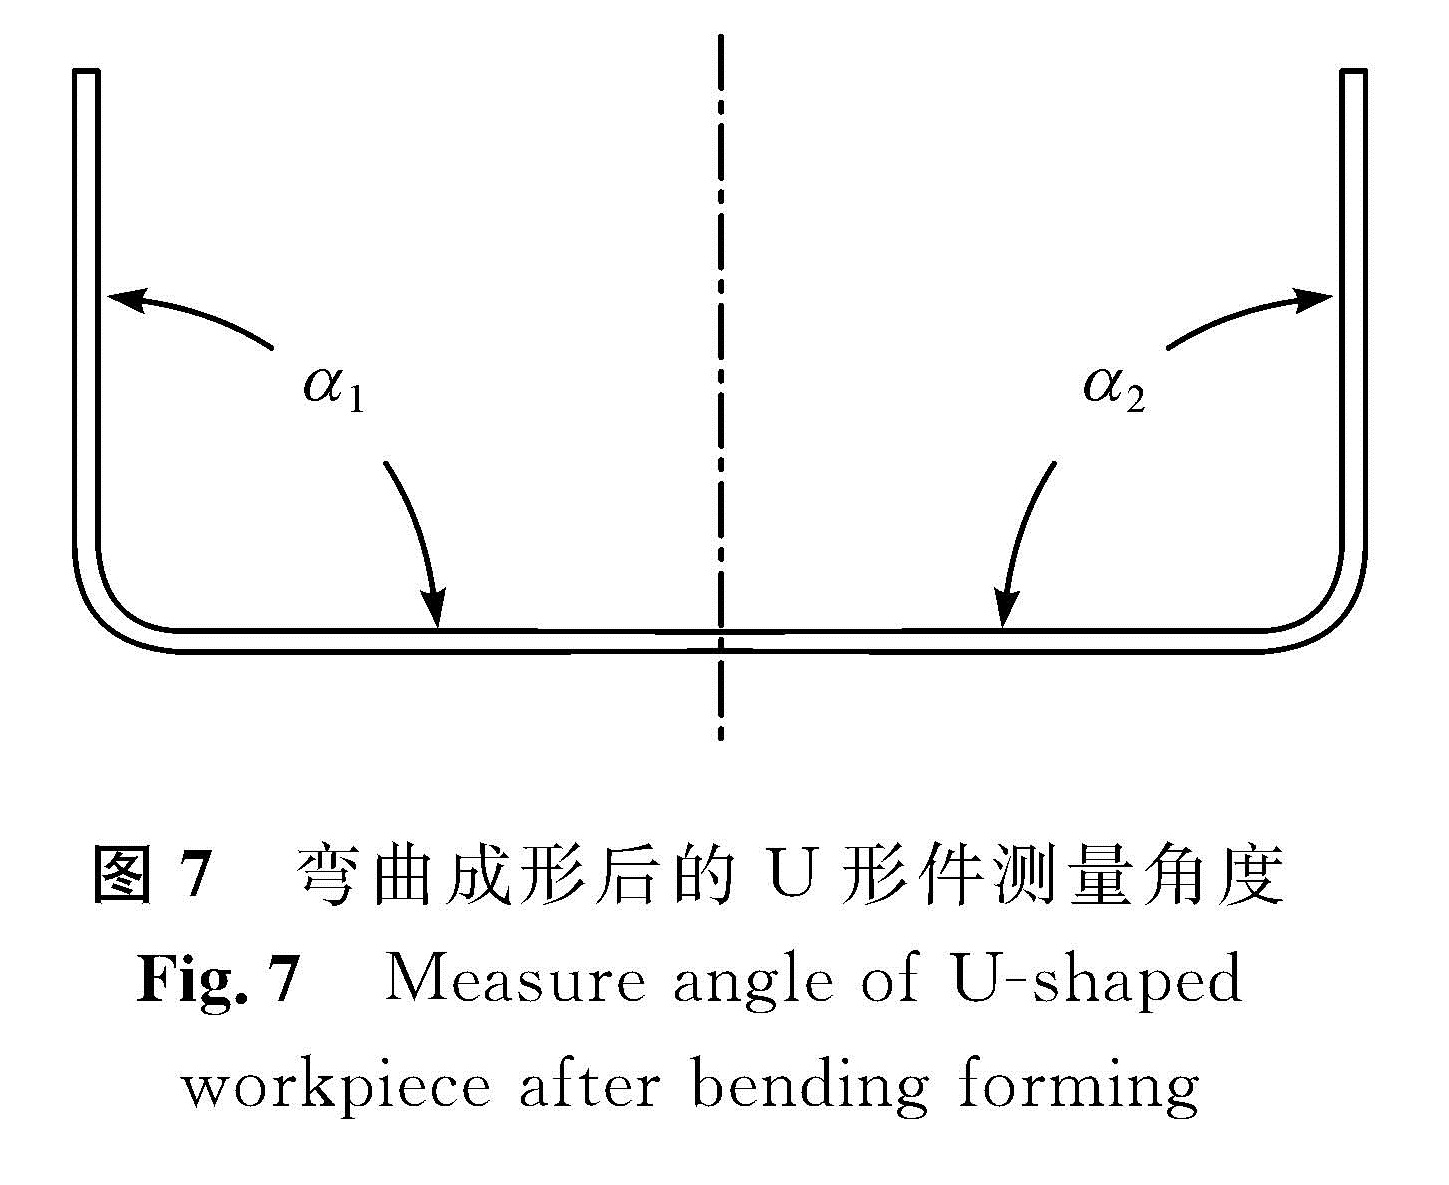 图7 弯曲成形后的U形件测量角度<br/>Fig.7 Measure angle of U-shaped workpiece after bending forming